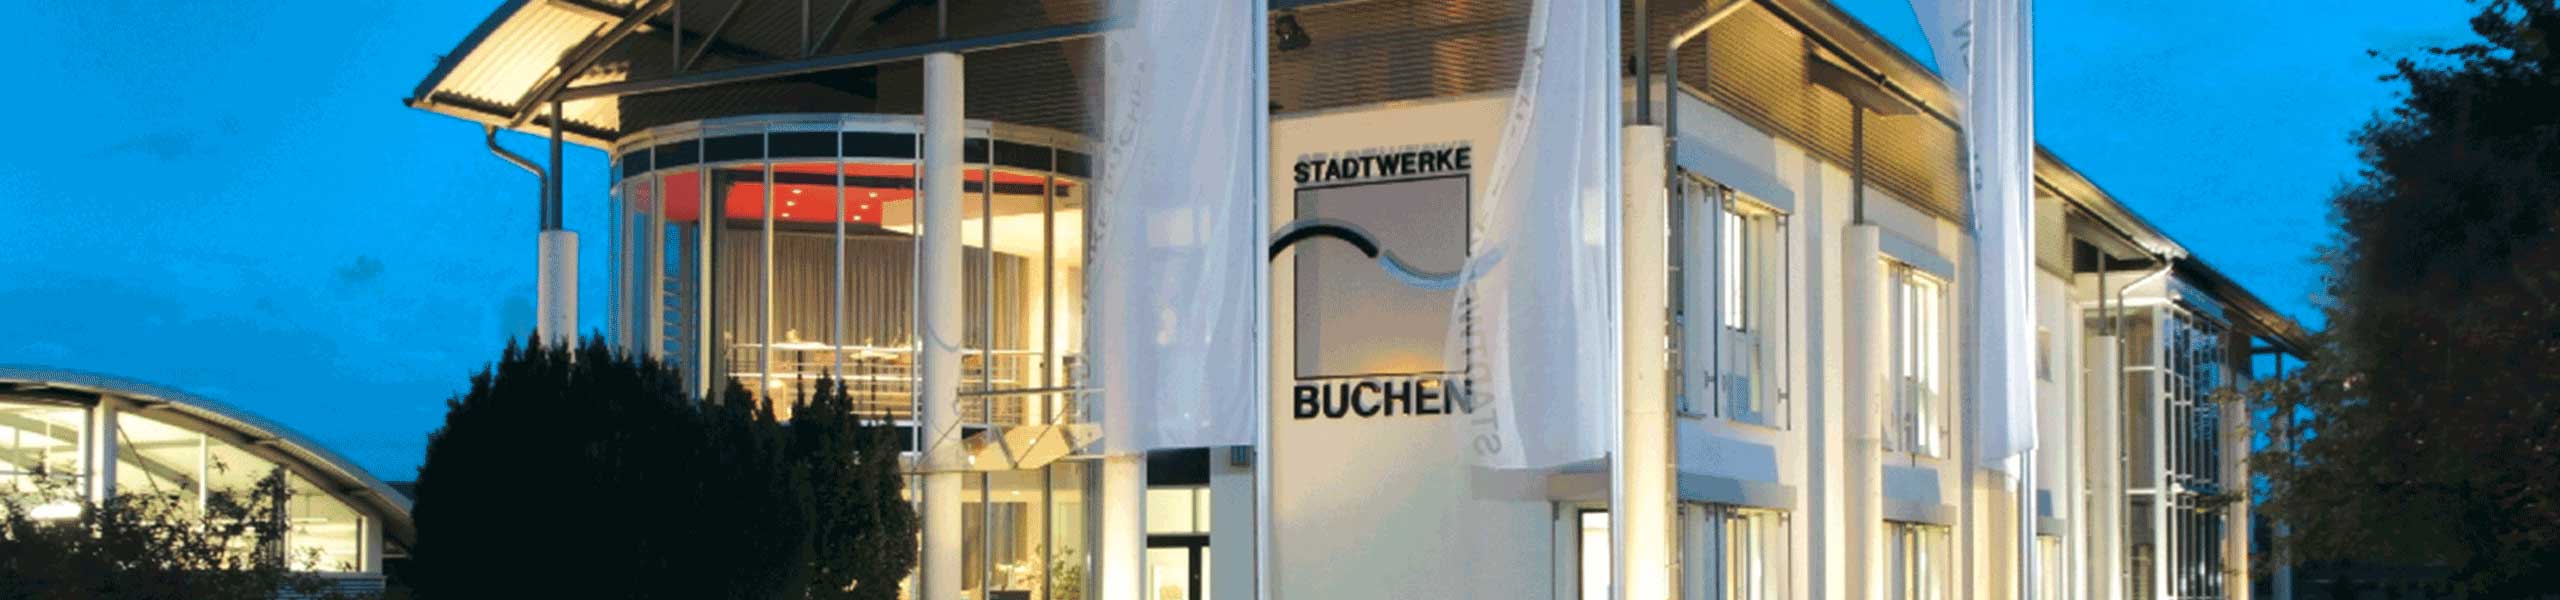 Stadtwerke Buchen GmbH & Co KG - Ihr Versorger vor Ort - Netzentgelte